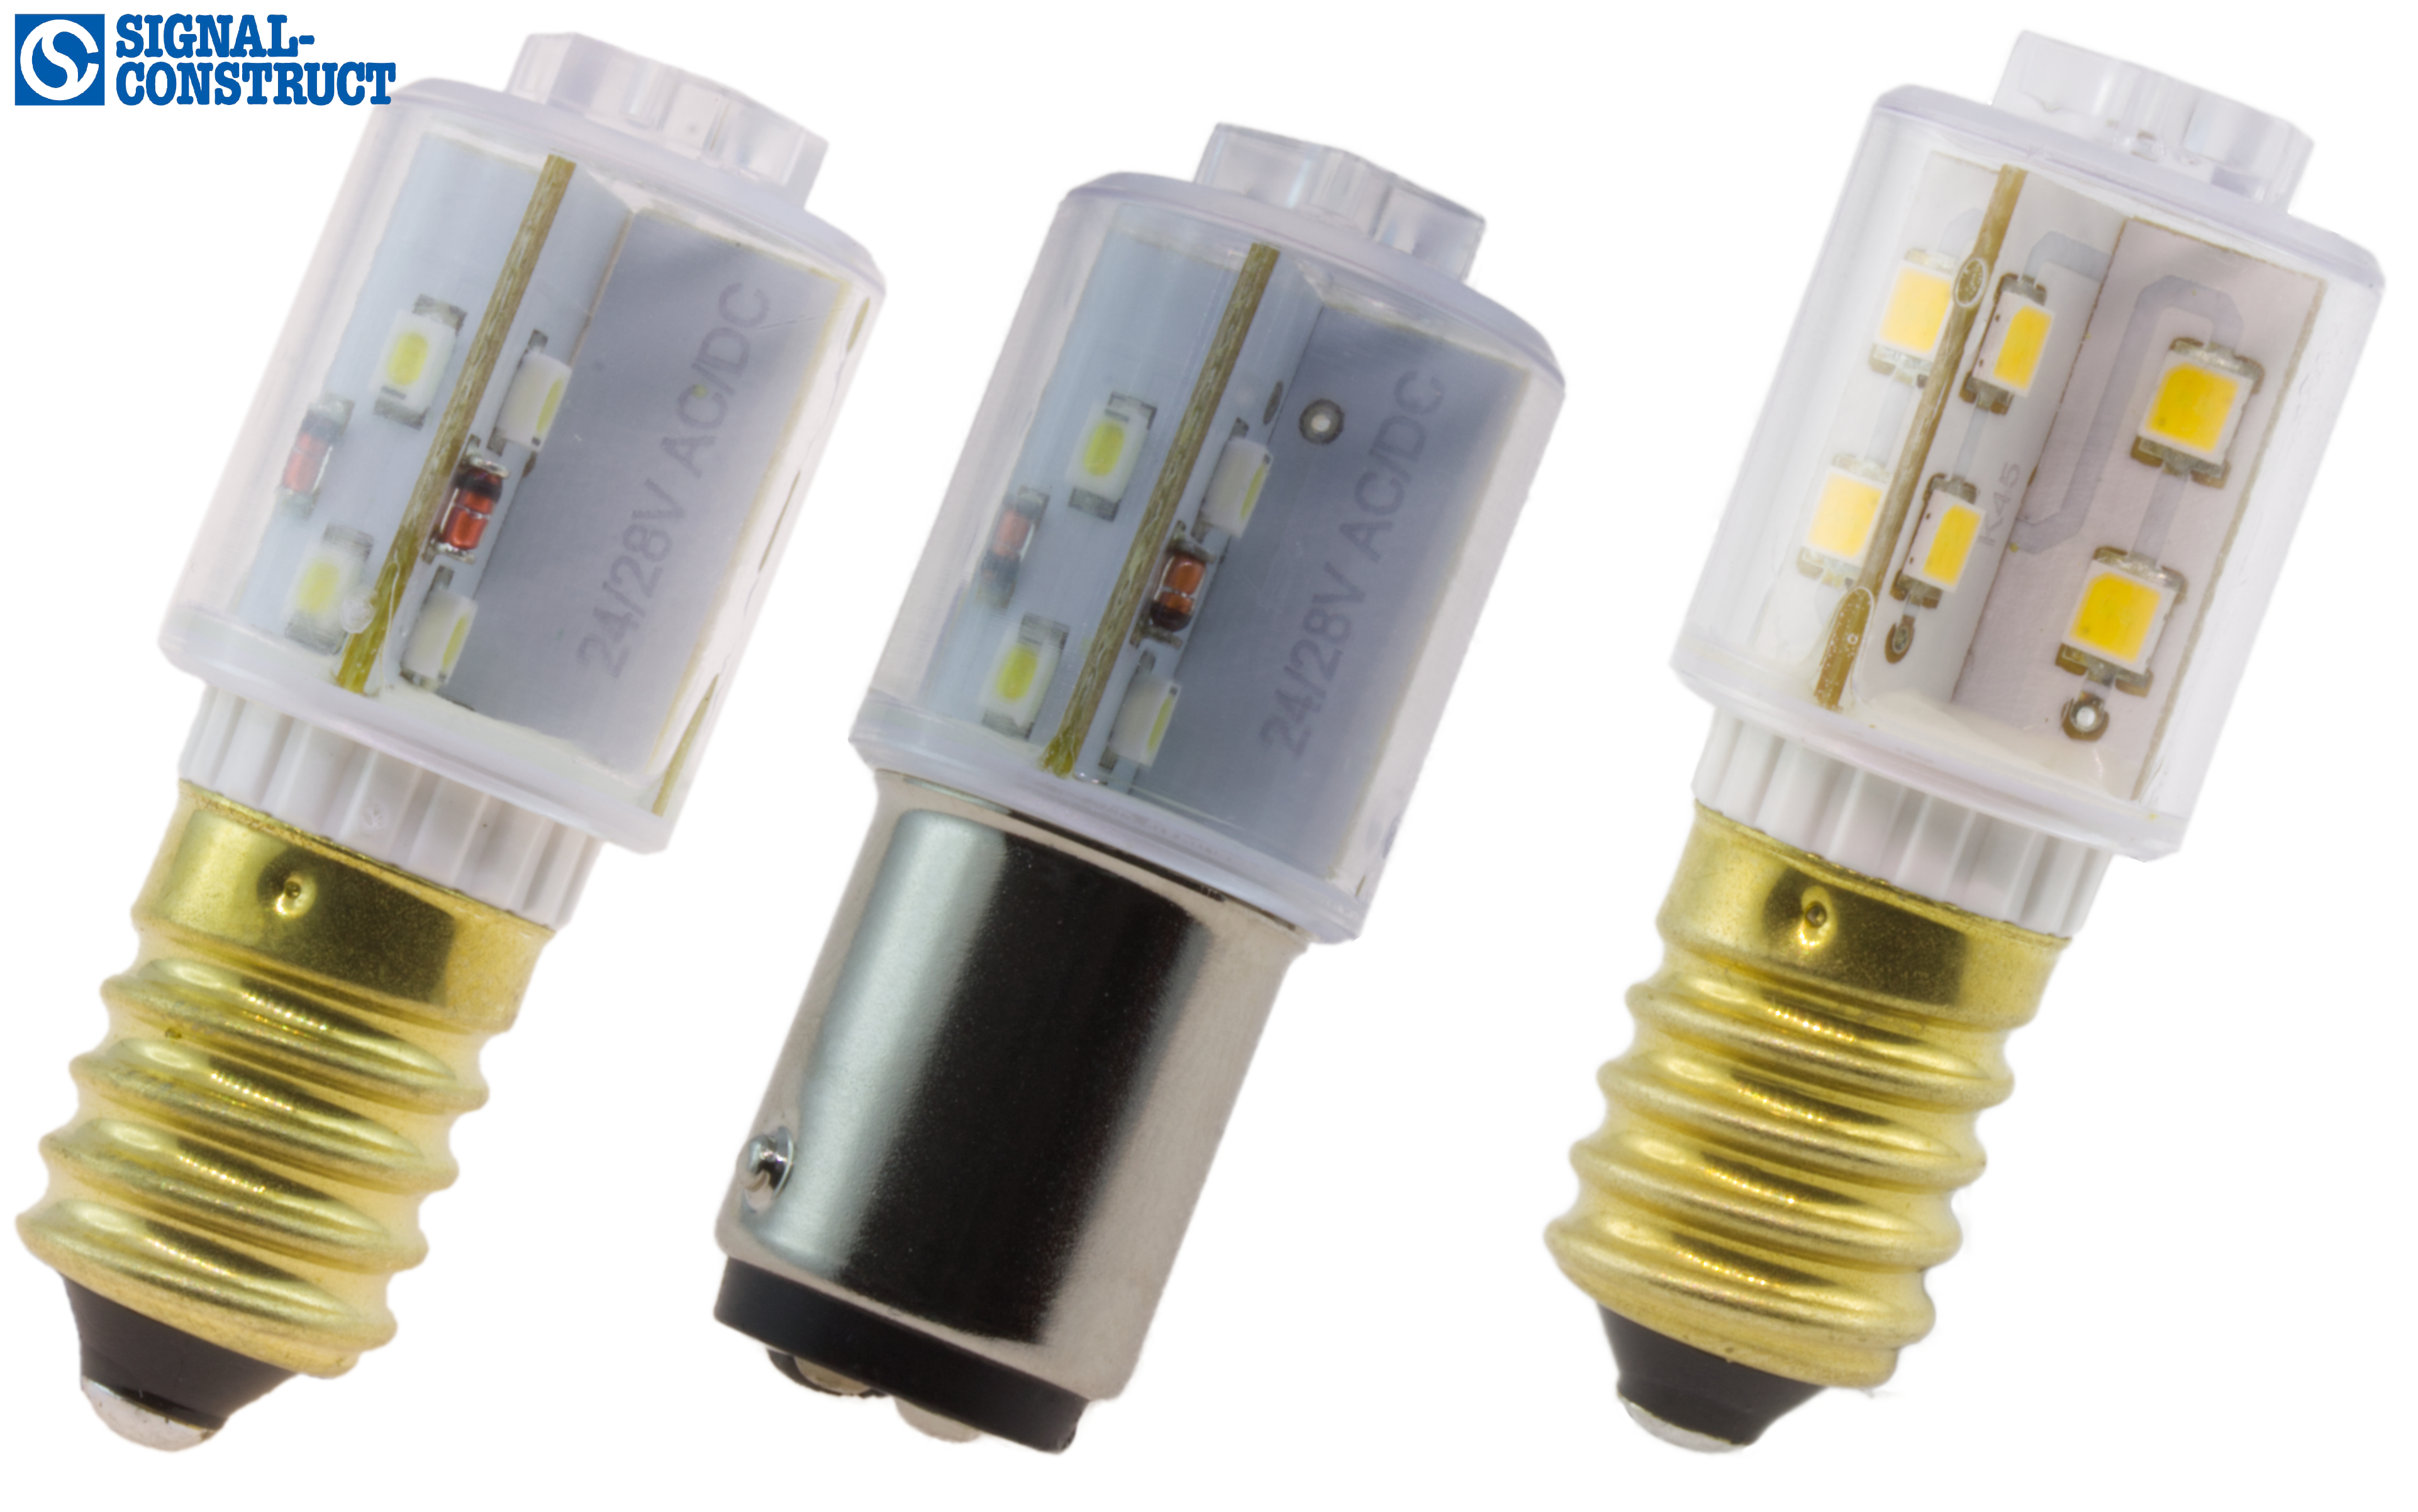 Die bewährten LED-Rundumlampen Sistar®-II mit deutlich verbesserter  Helligkeit, Signal-Construct elektro-optische Anzeigen und Systeme GmbH,  Story - PresseBox